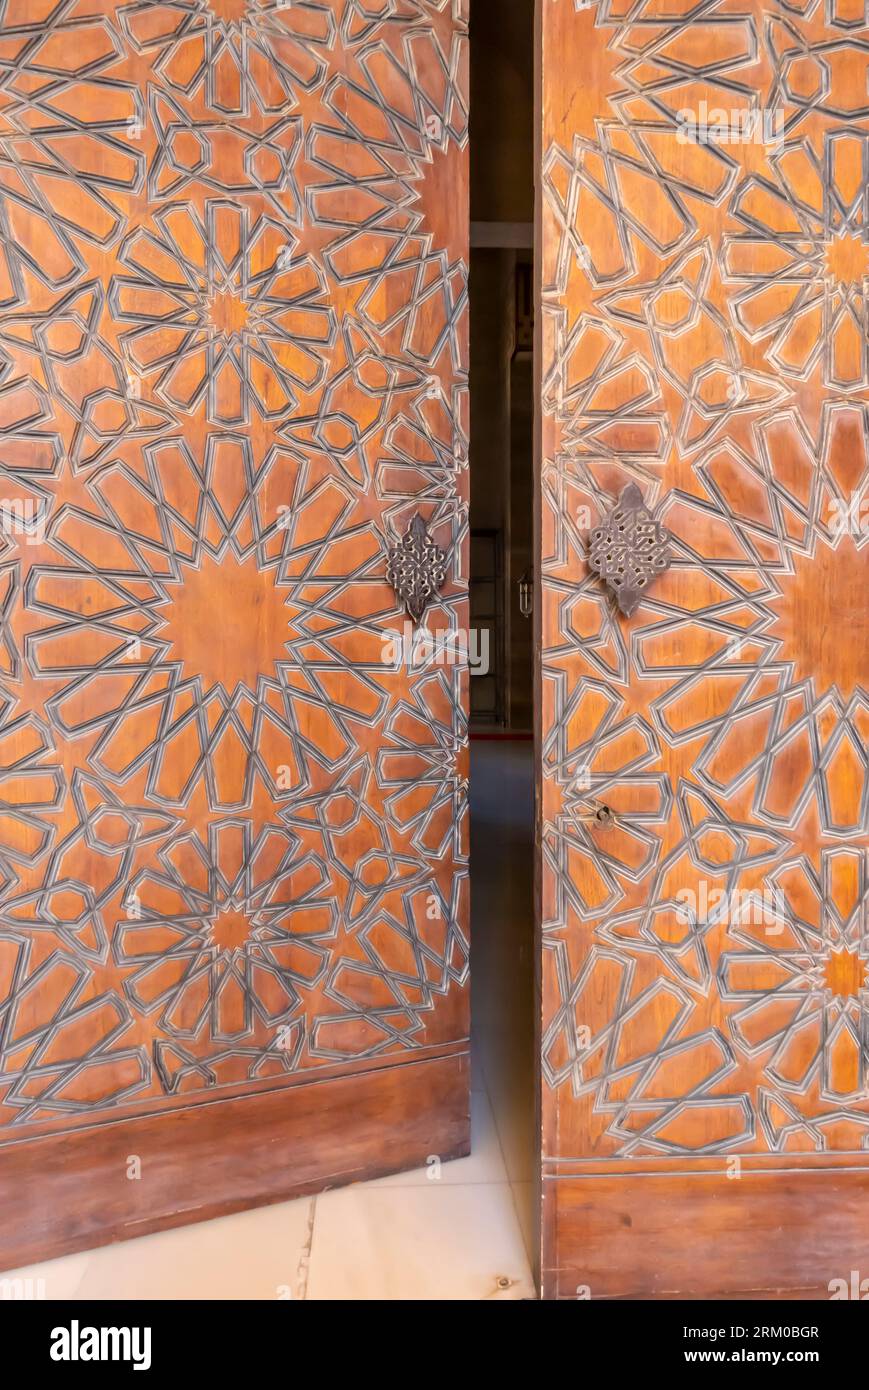 Türen in der Al Fateh Grand Moschee, Tür in der Al Fateh Grand Moschee Bahrain. Die Türmoschee Bahrain wurde geöffnet Stockfoto